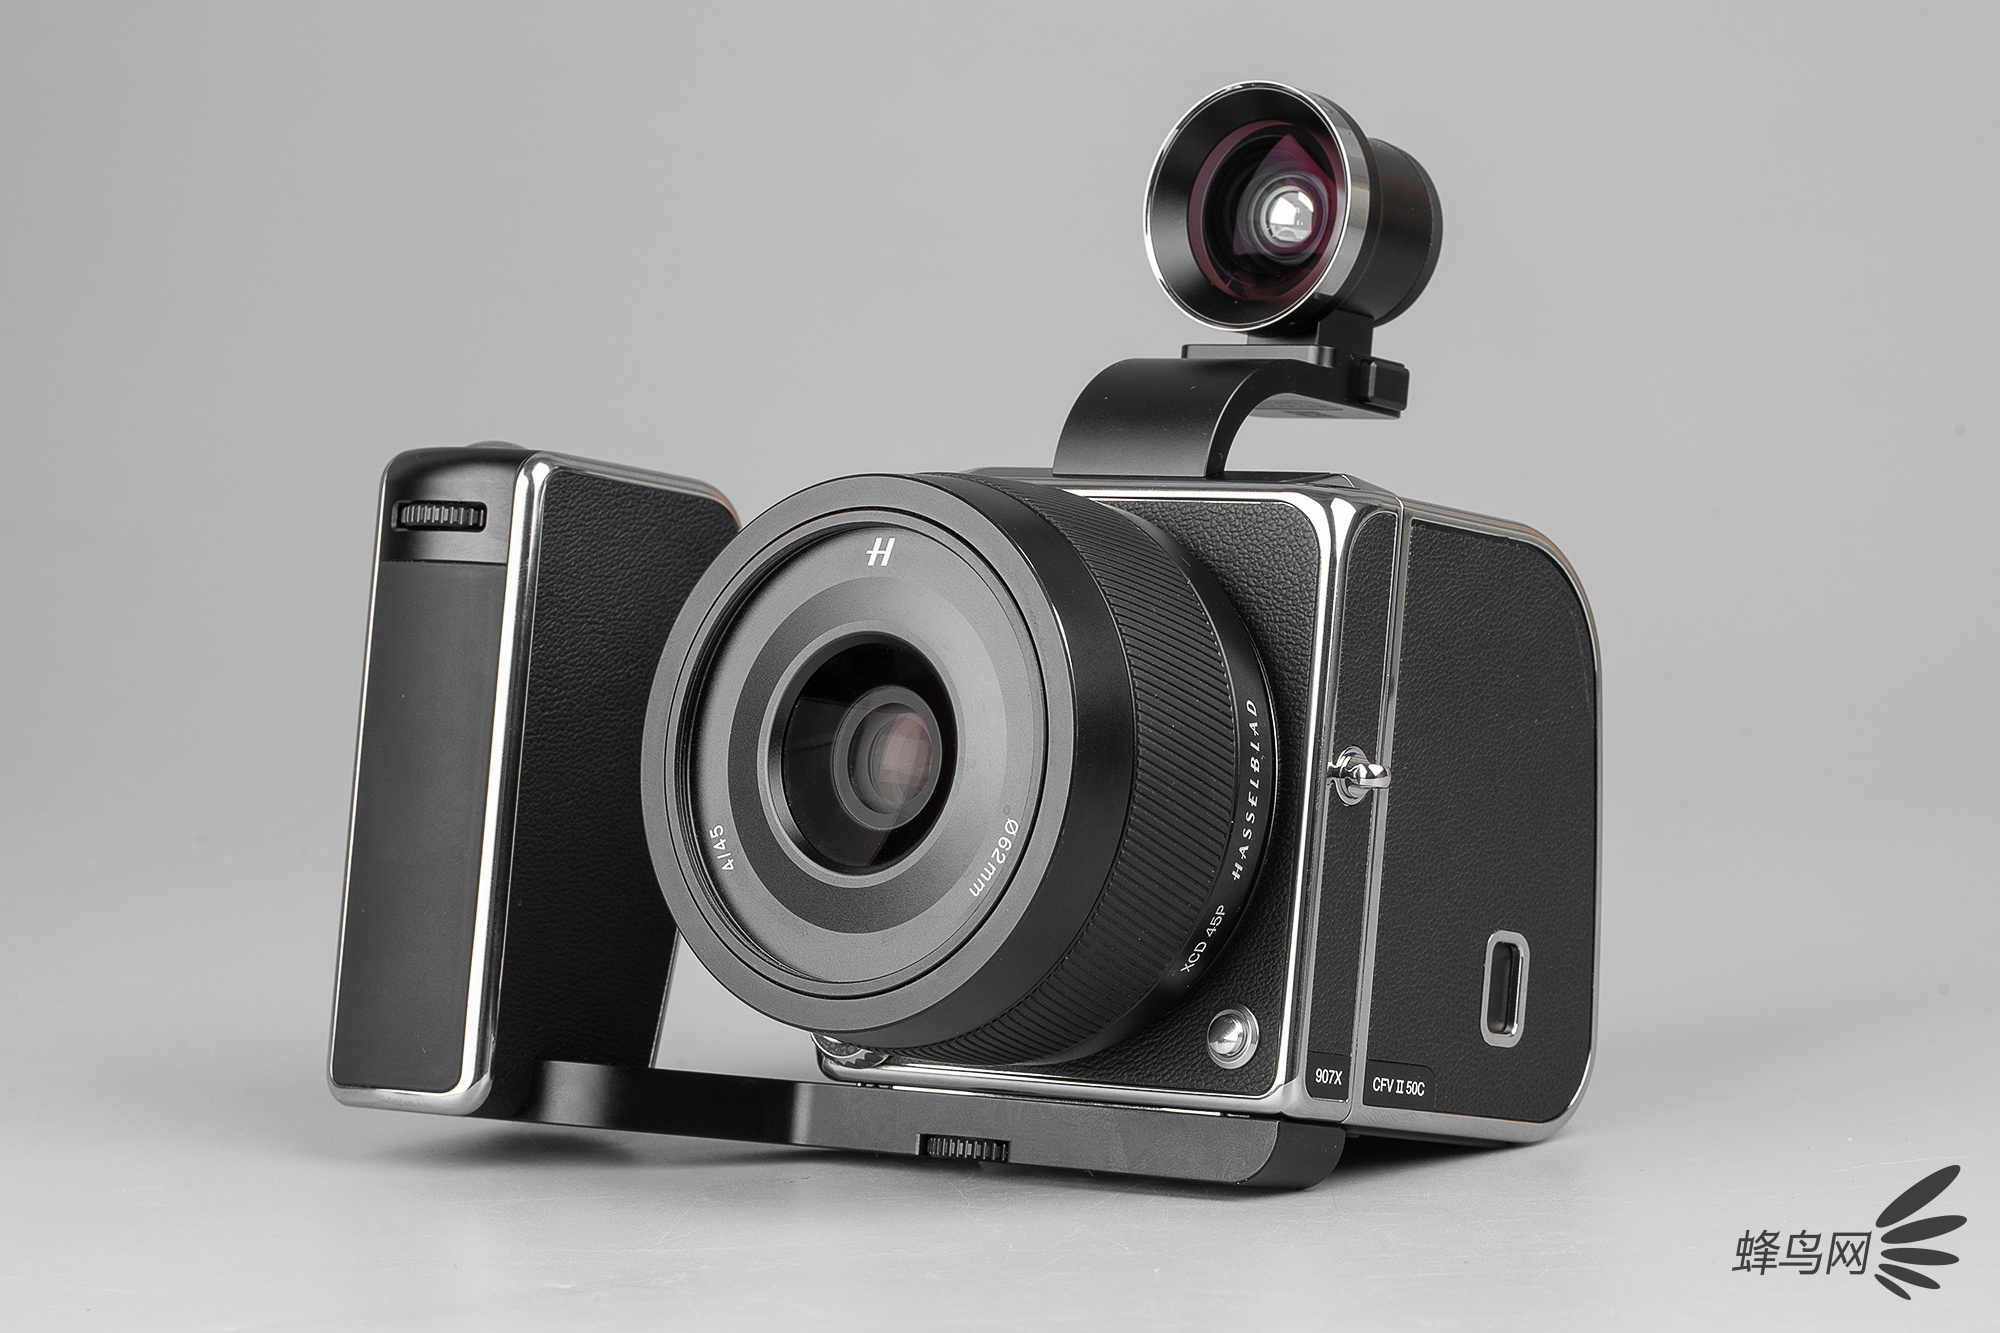 哈苏907x 50c这套相机作为一款中画幅相机的区别是什么